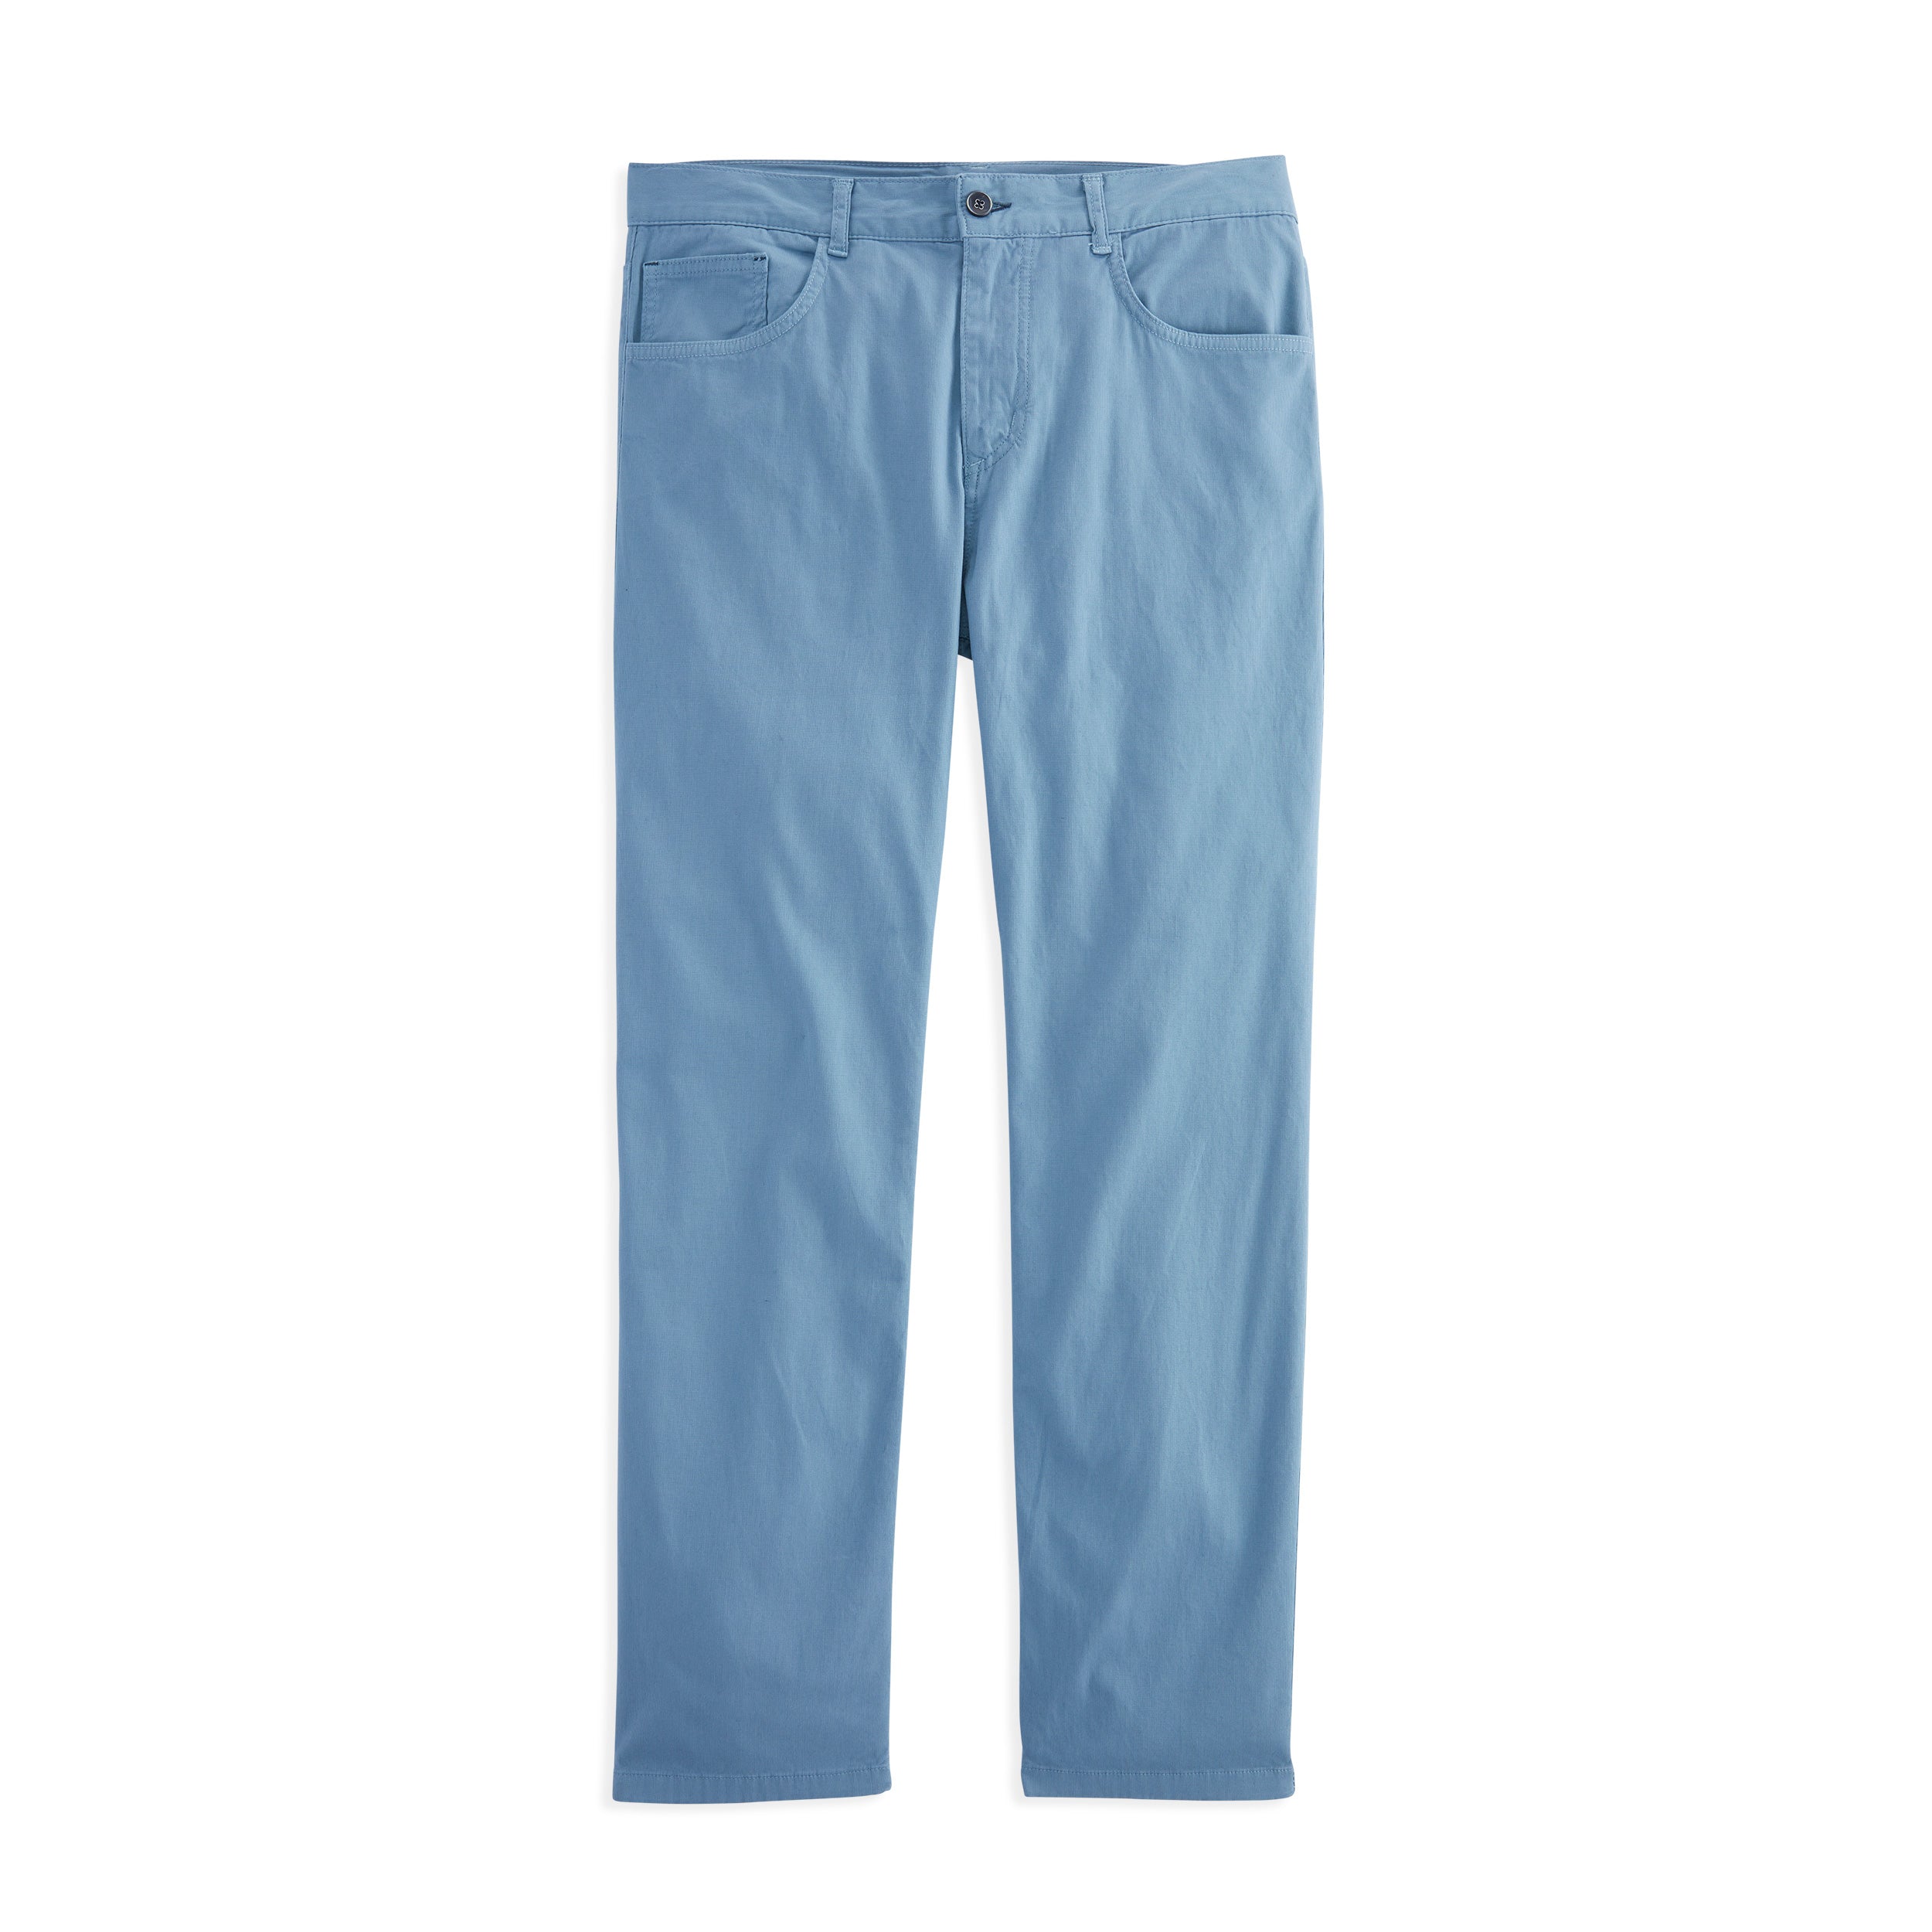 Gionfriddo Pocket Model – 5 Jean Sportswear